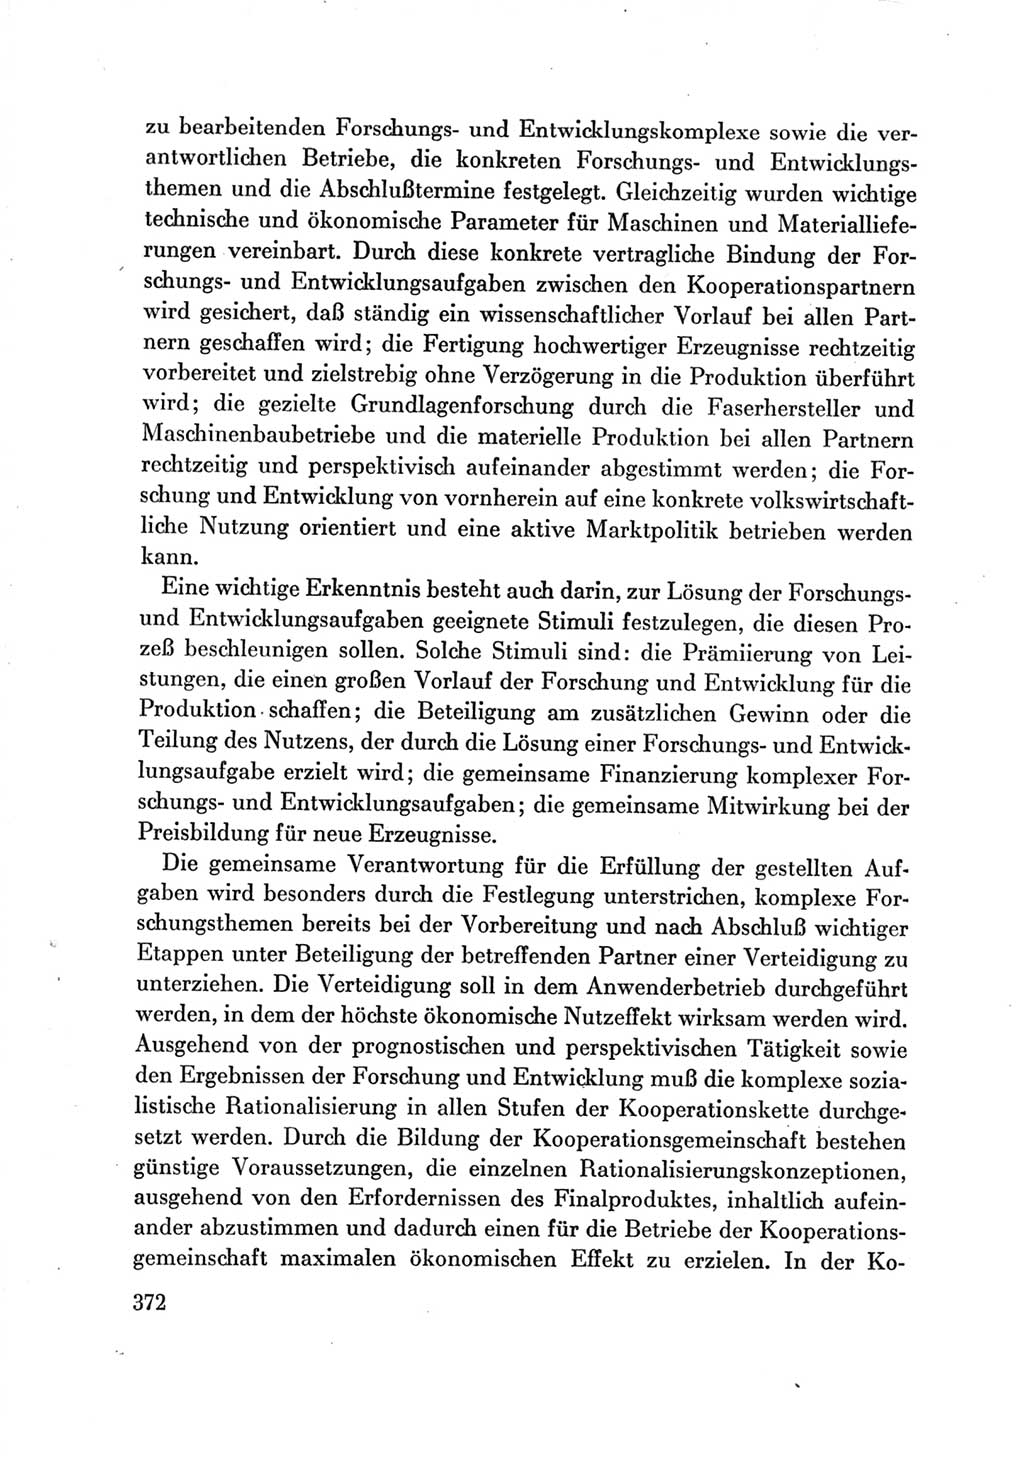 Protokoll der Verhandlungen des Ⅶ. Parteitages der Sozialistischen Einheitspartei Deutschlands (SED) [Deutsche Demokratische Republik (DDR)] 1967, Band Ⅲ, Seite 372 (Prot. Verh. Ⅶ. PT SED DDR 1967, Bd. Ⅲ, S. 372)